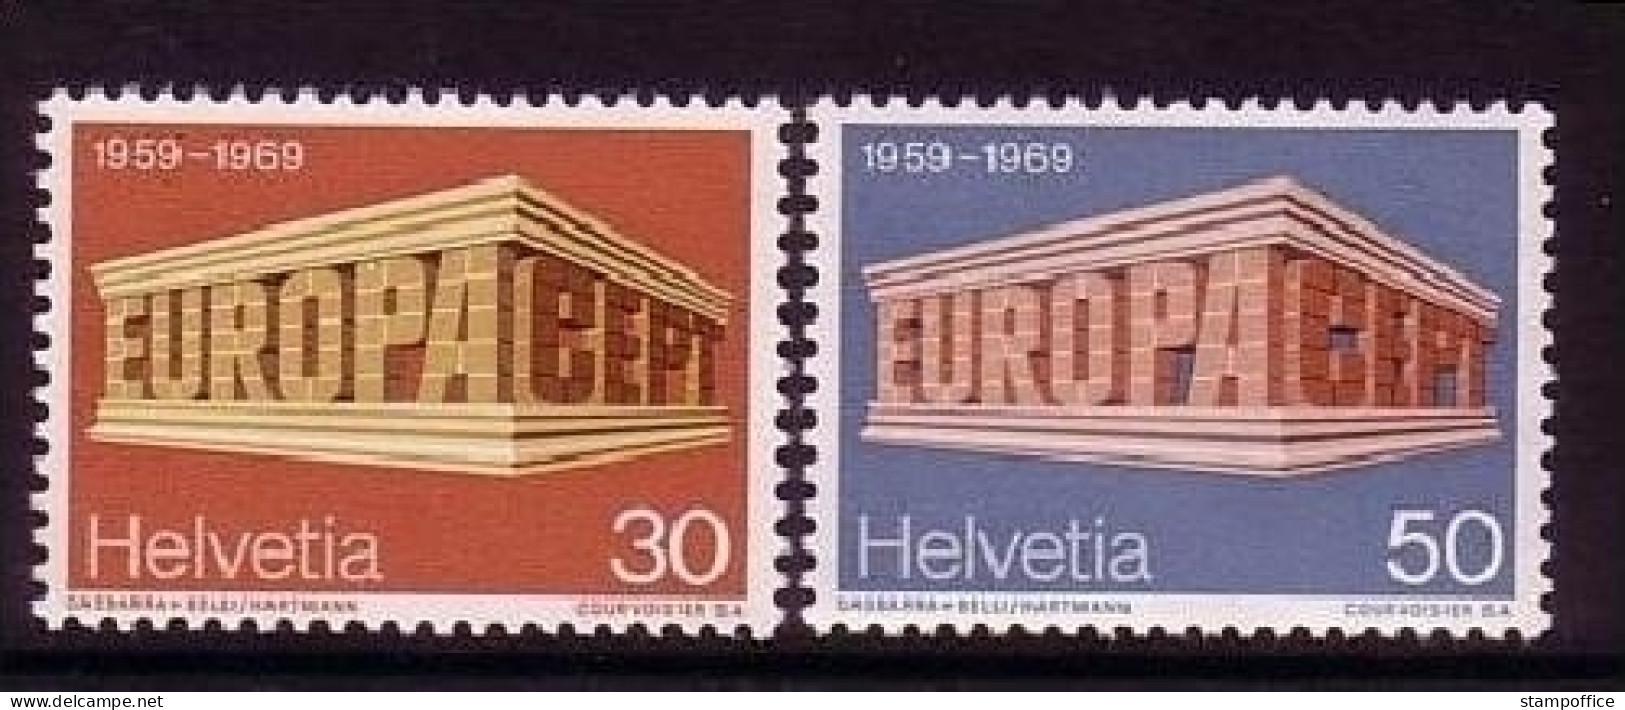 SCHWEIZ MI-NR. 900-901 POSTFRISCH(MINT) EUROPA 1969 EUROPA CEPT - 1969